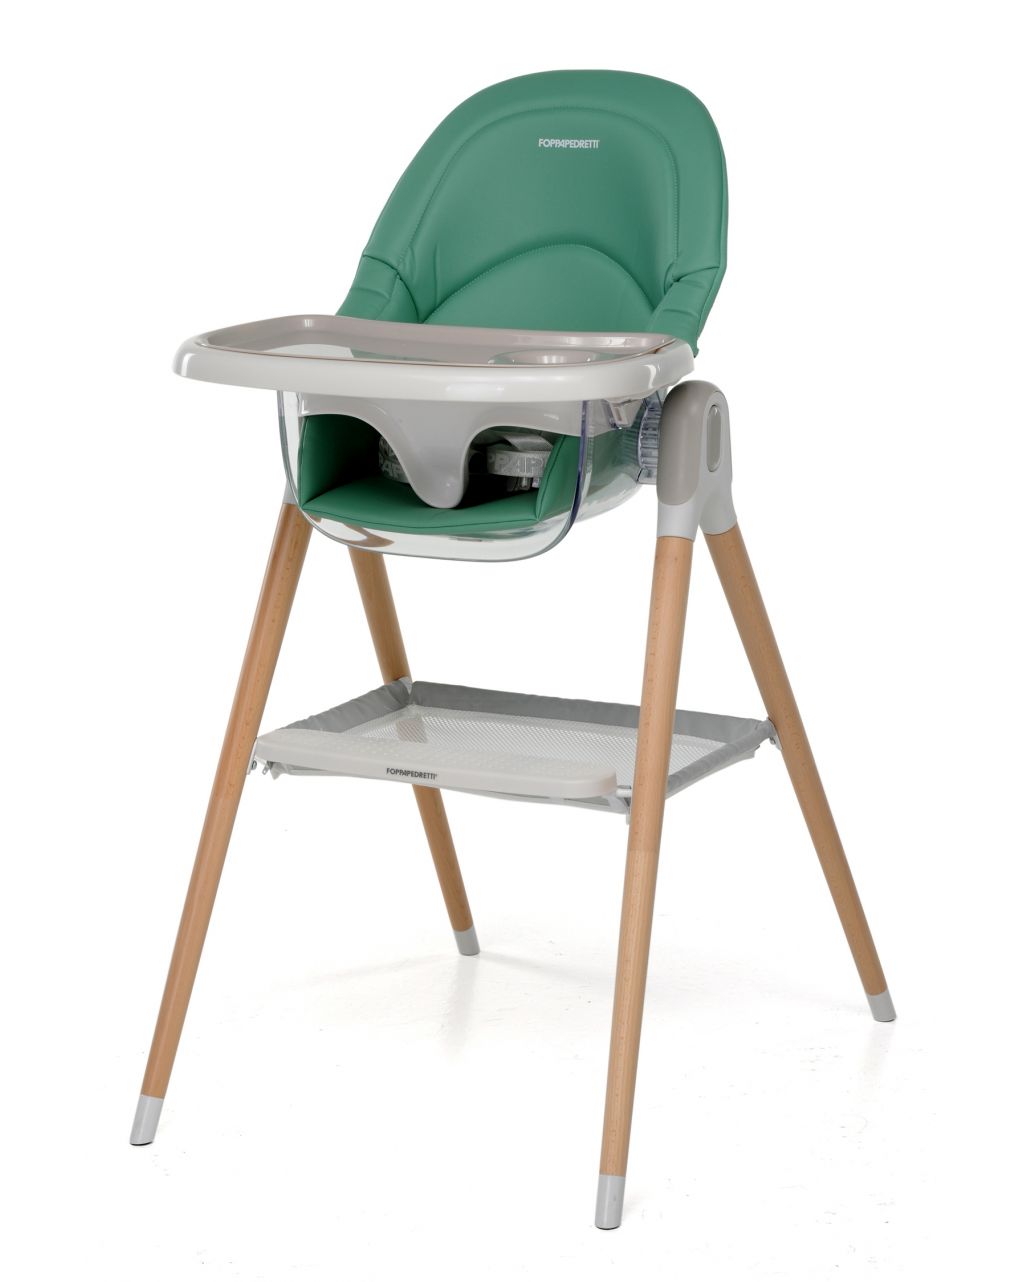 Seggiolone/baby sedia 2 in 1 bonito green - foppapedretti